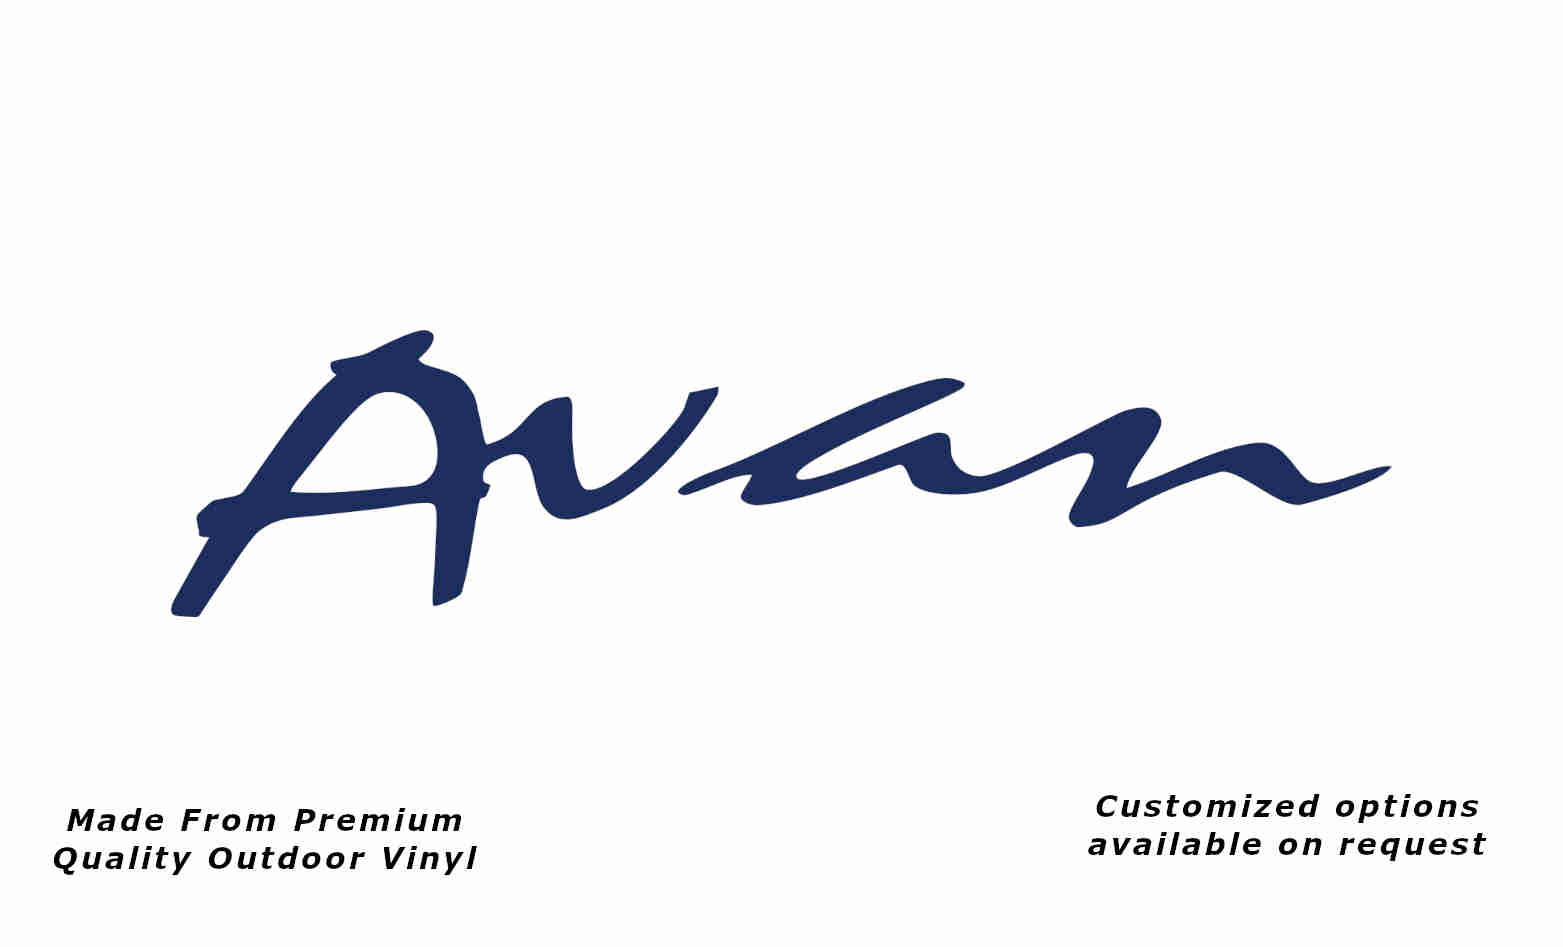 Avan caravan replacement vinyl decal sticker in dark blue.